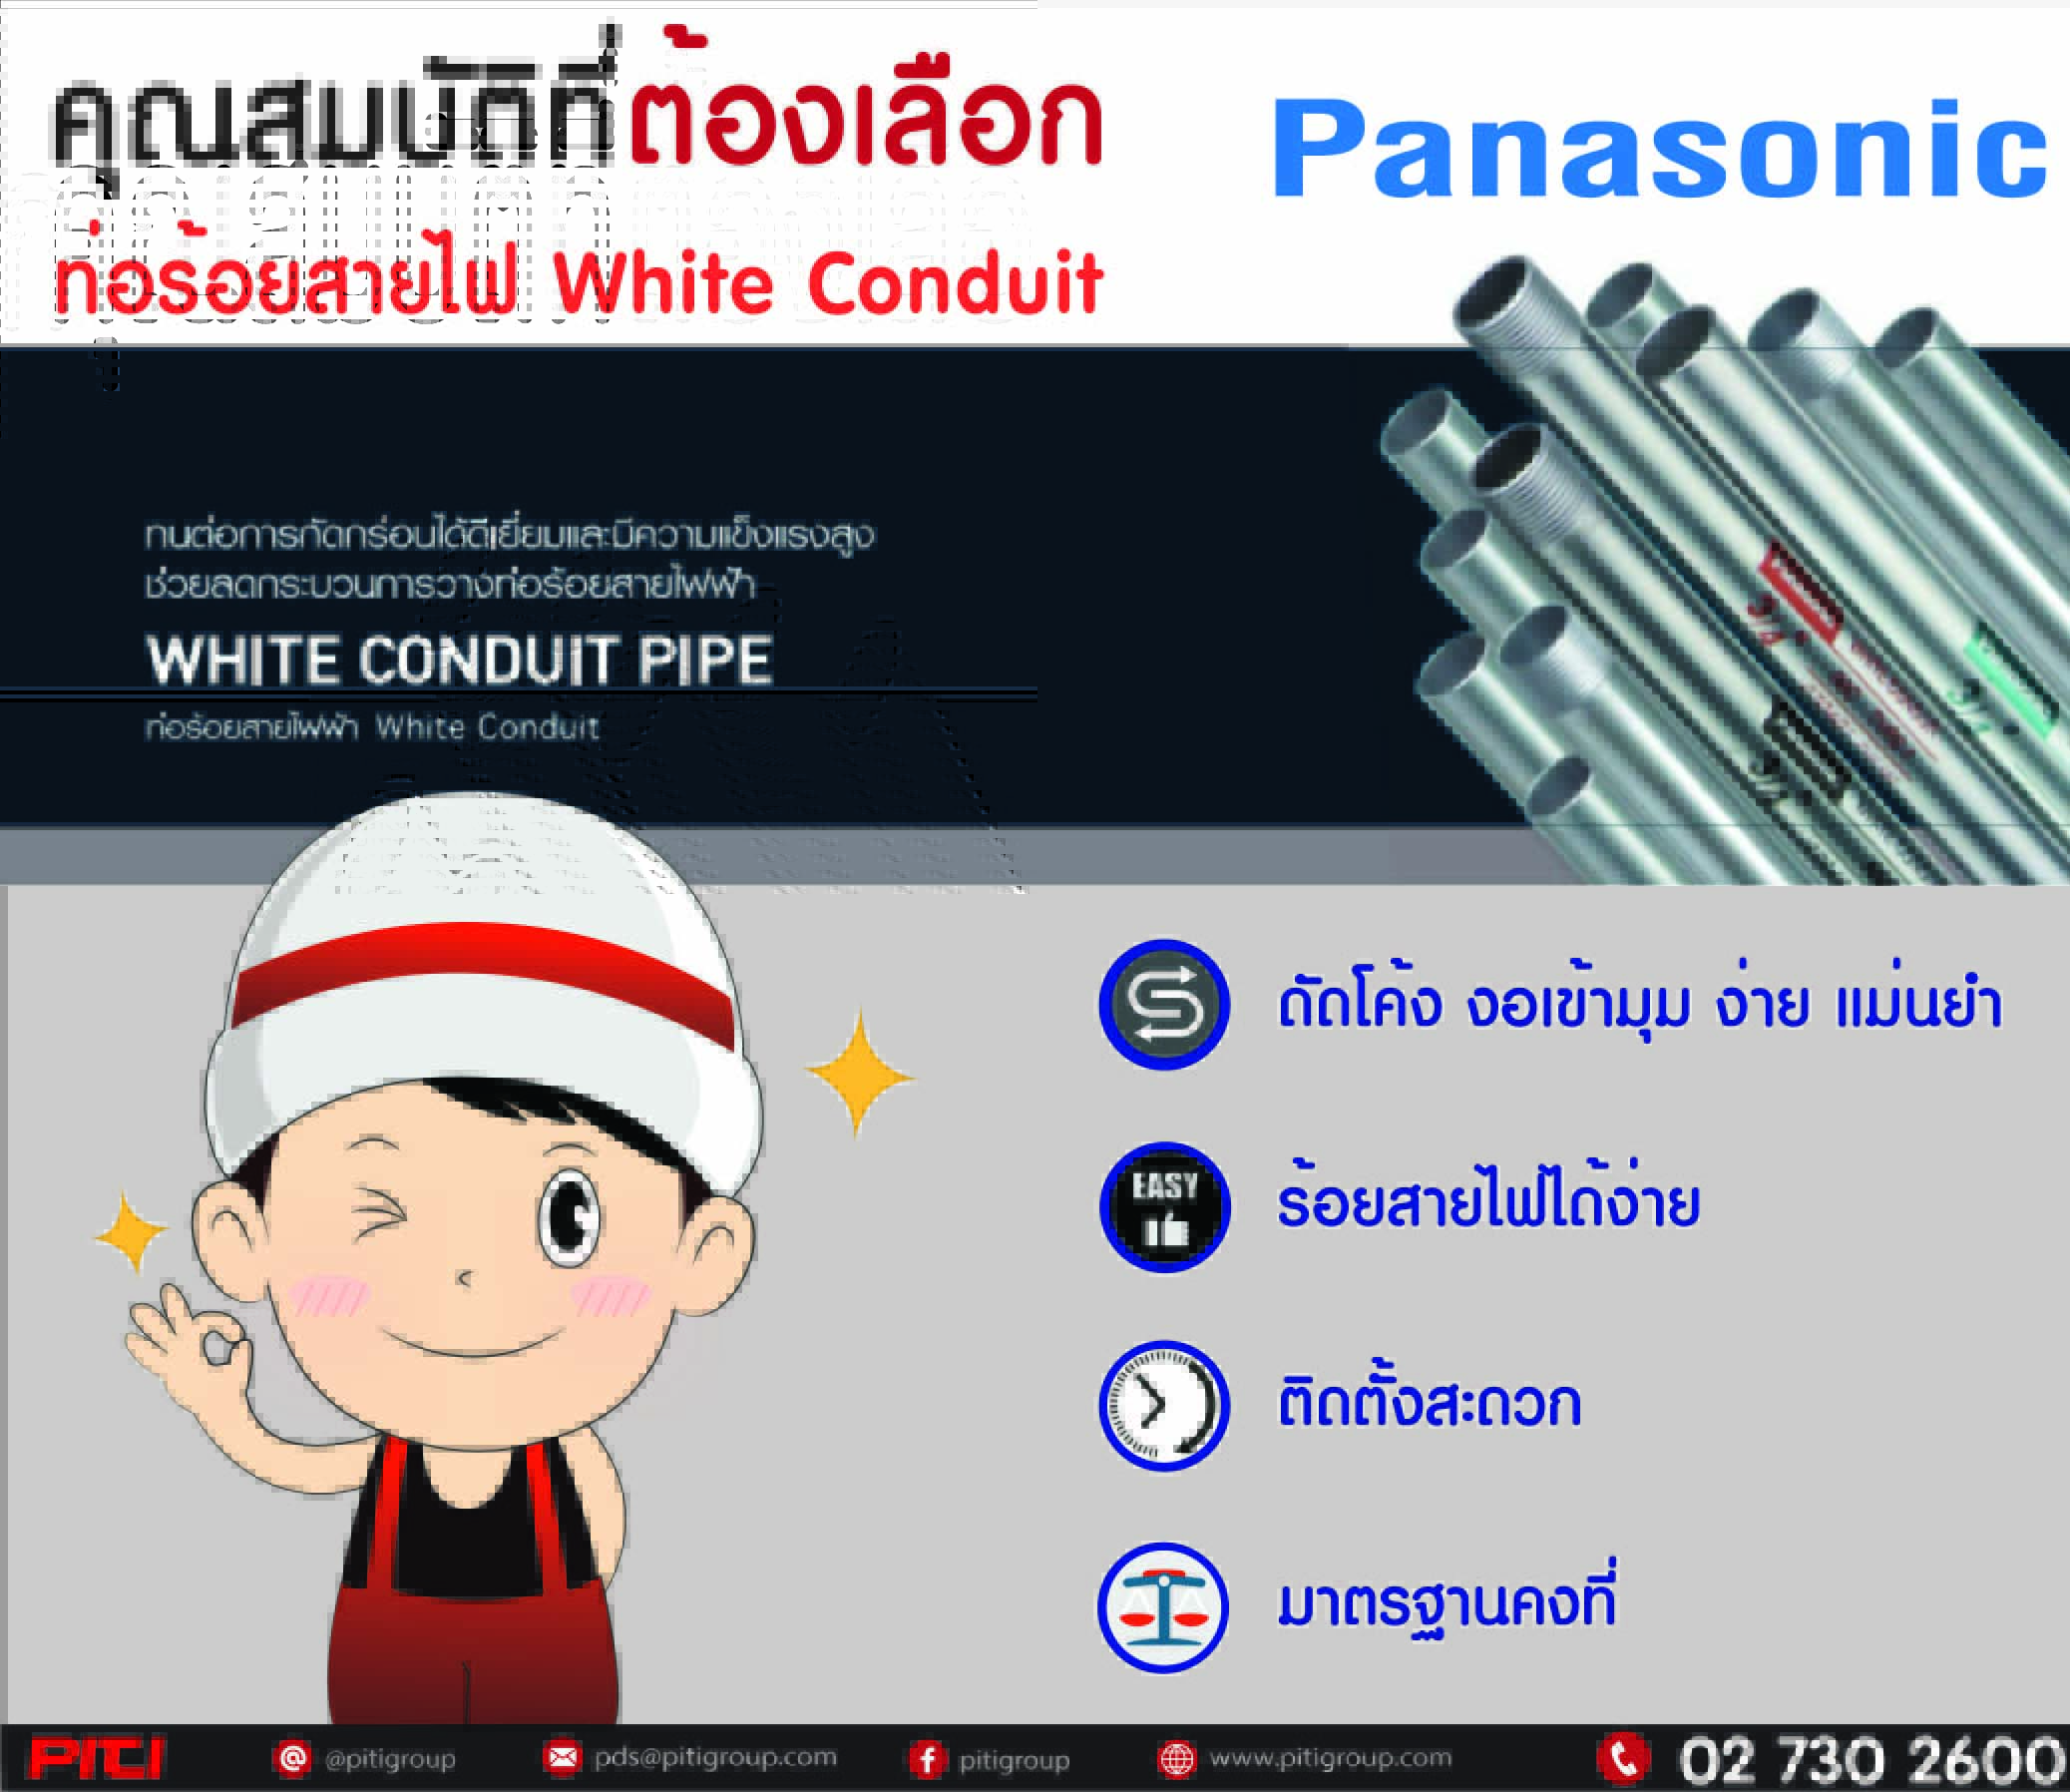 คุณสมบัติ ท่อร้อยสายไฟ White Conduit ของ Panasonic